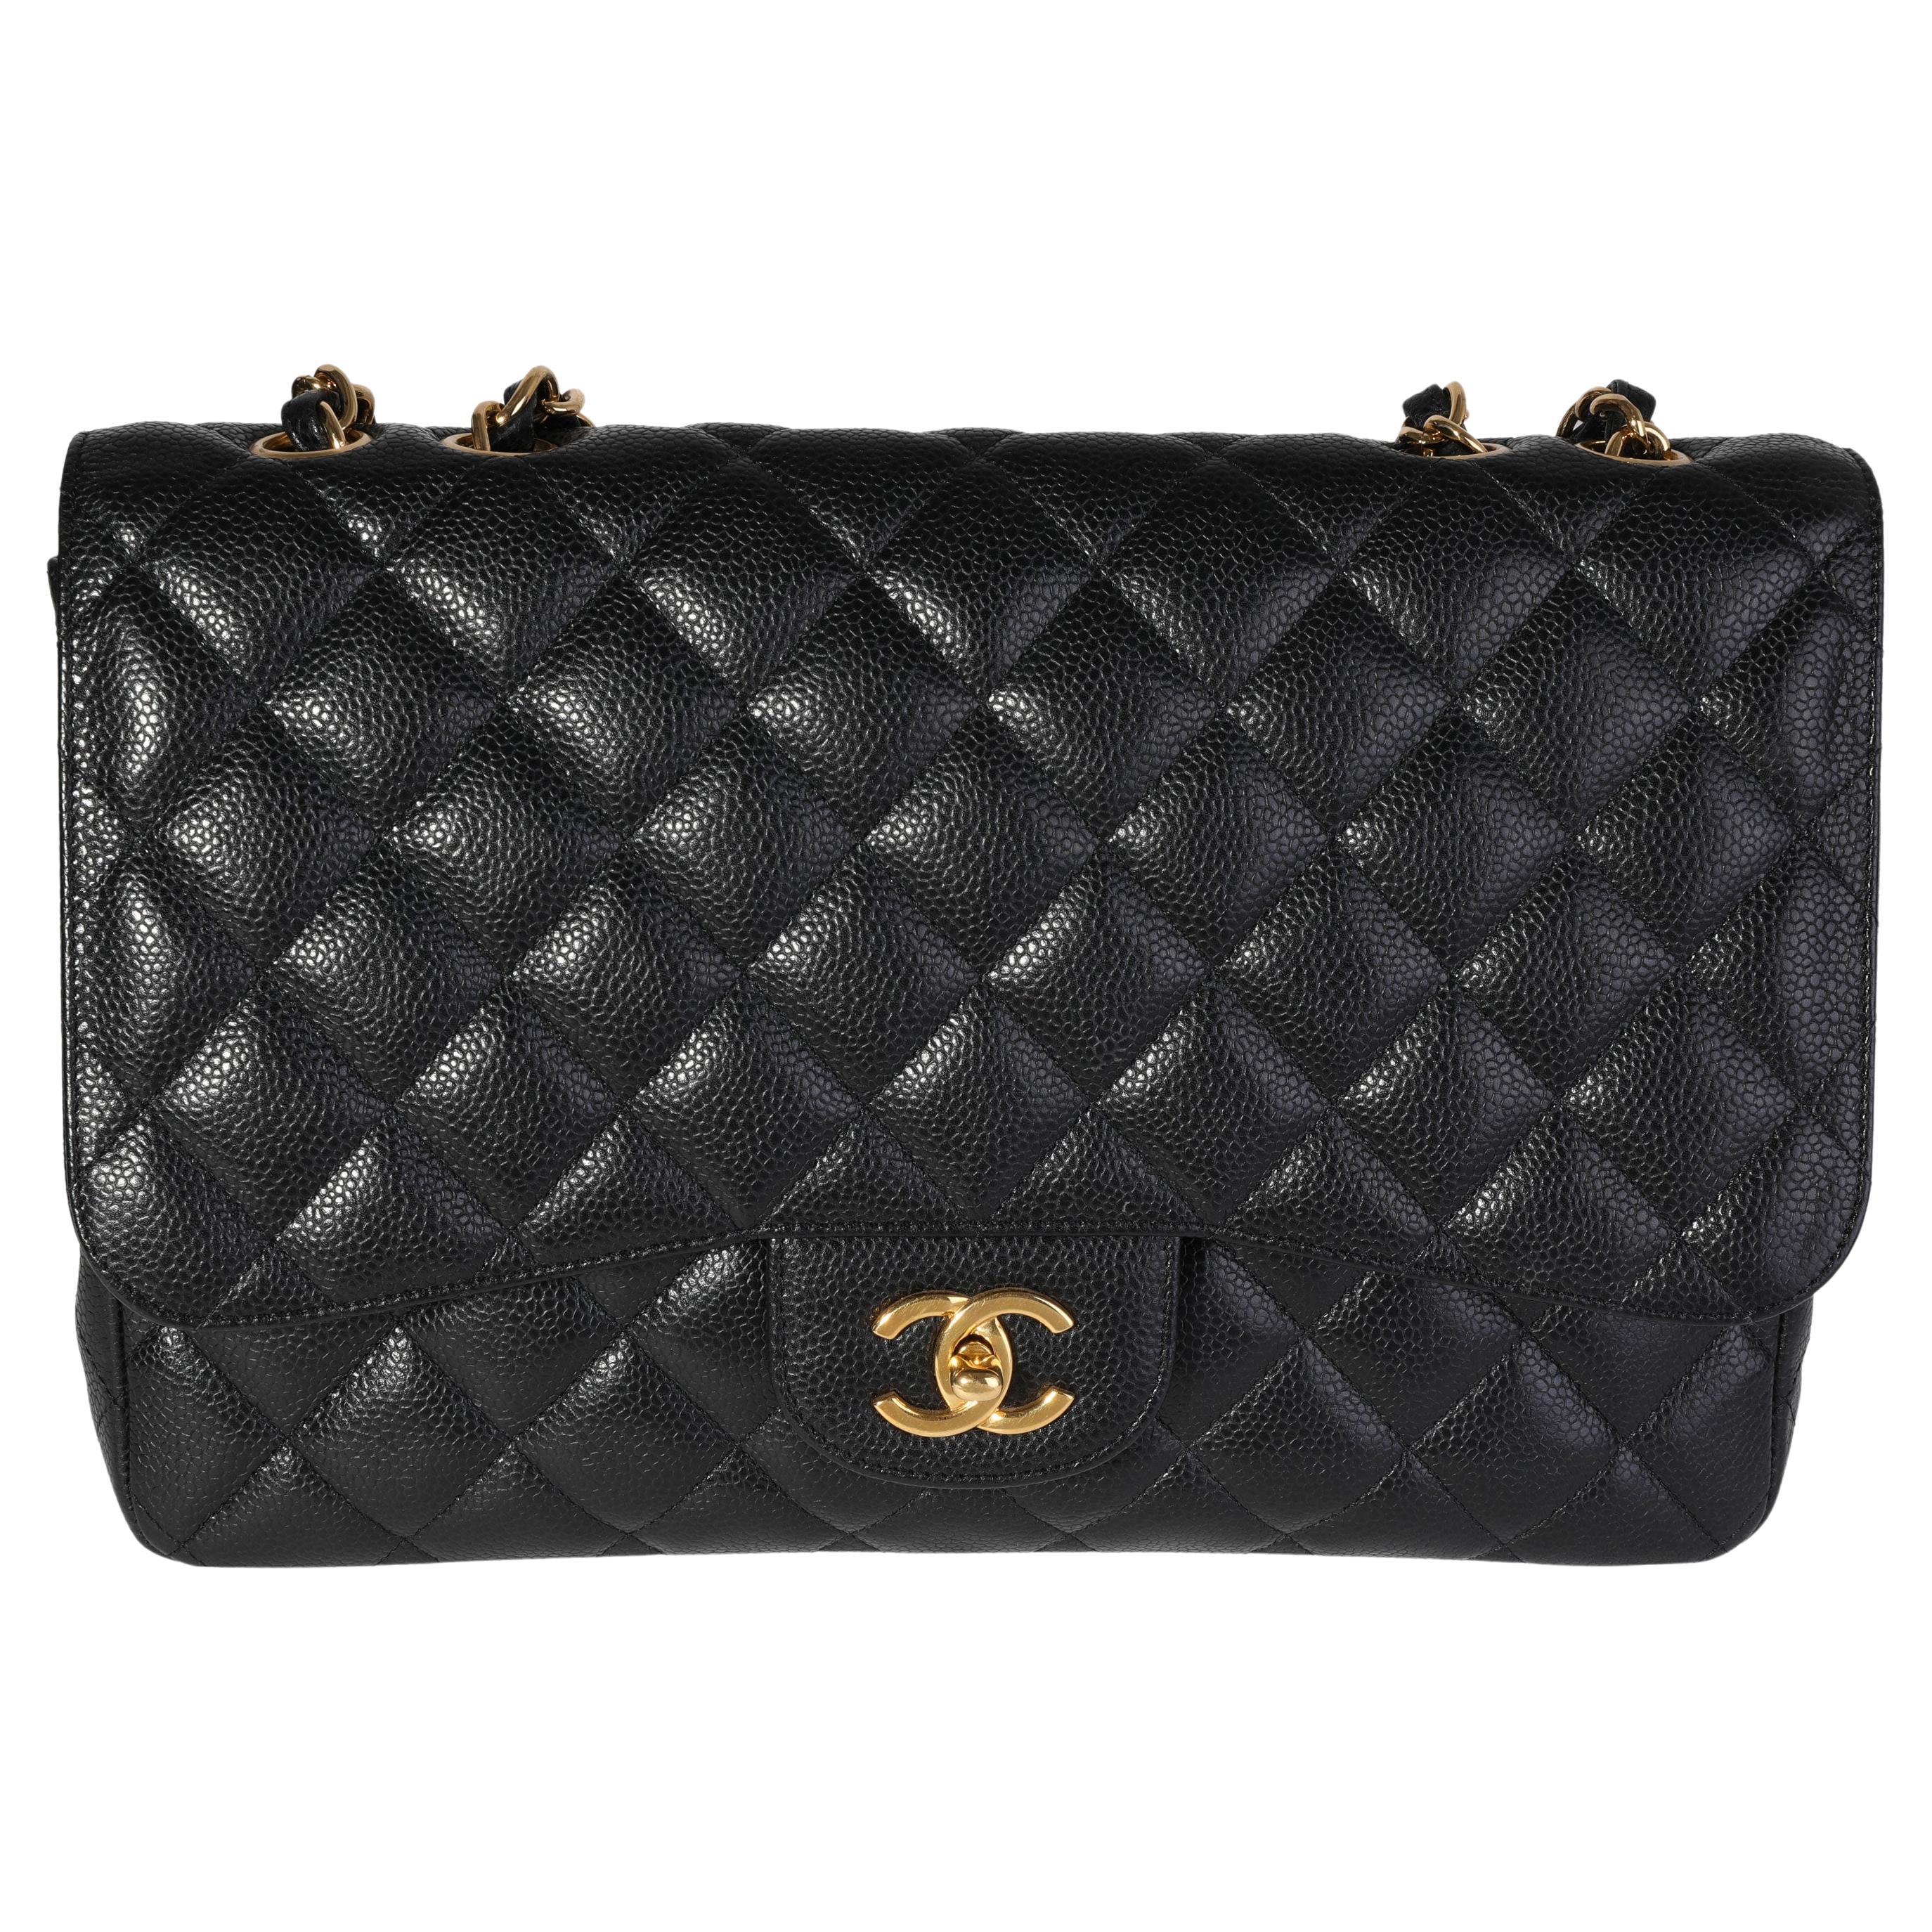 Vintage Chanel black 2.55 double flap shoulder bag. Paris limited